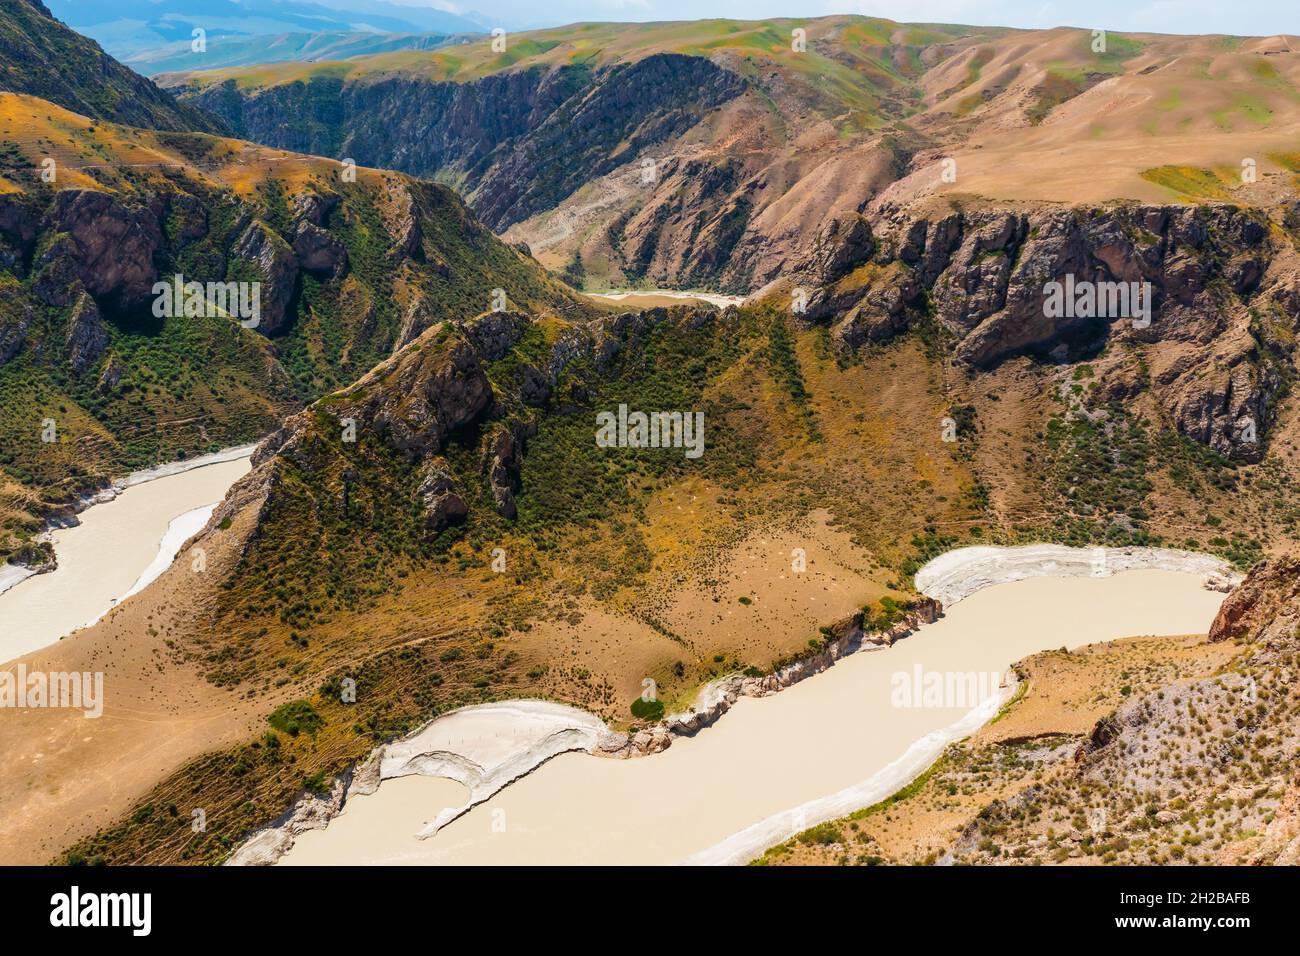 El espectacular paisaje geológico del Gran Cañón de Kuokesu, Xinjiang, China.Vista aérea. Foto de stock